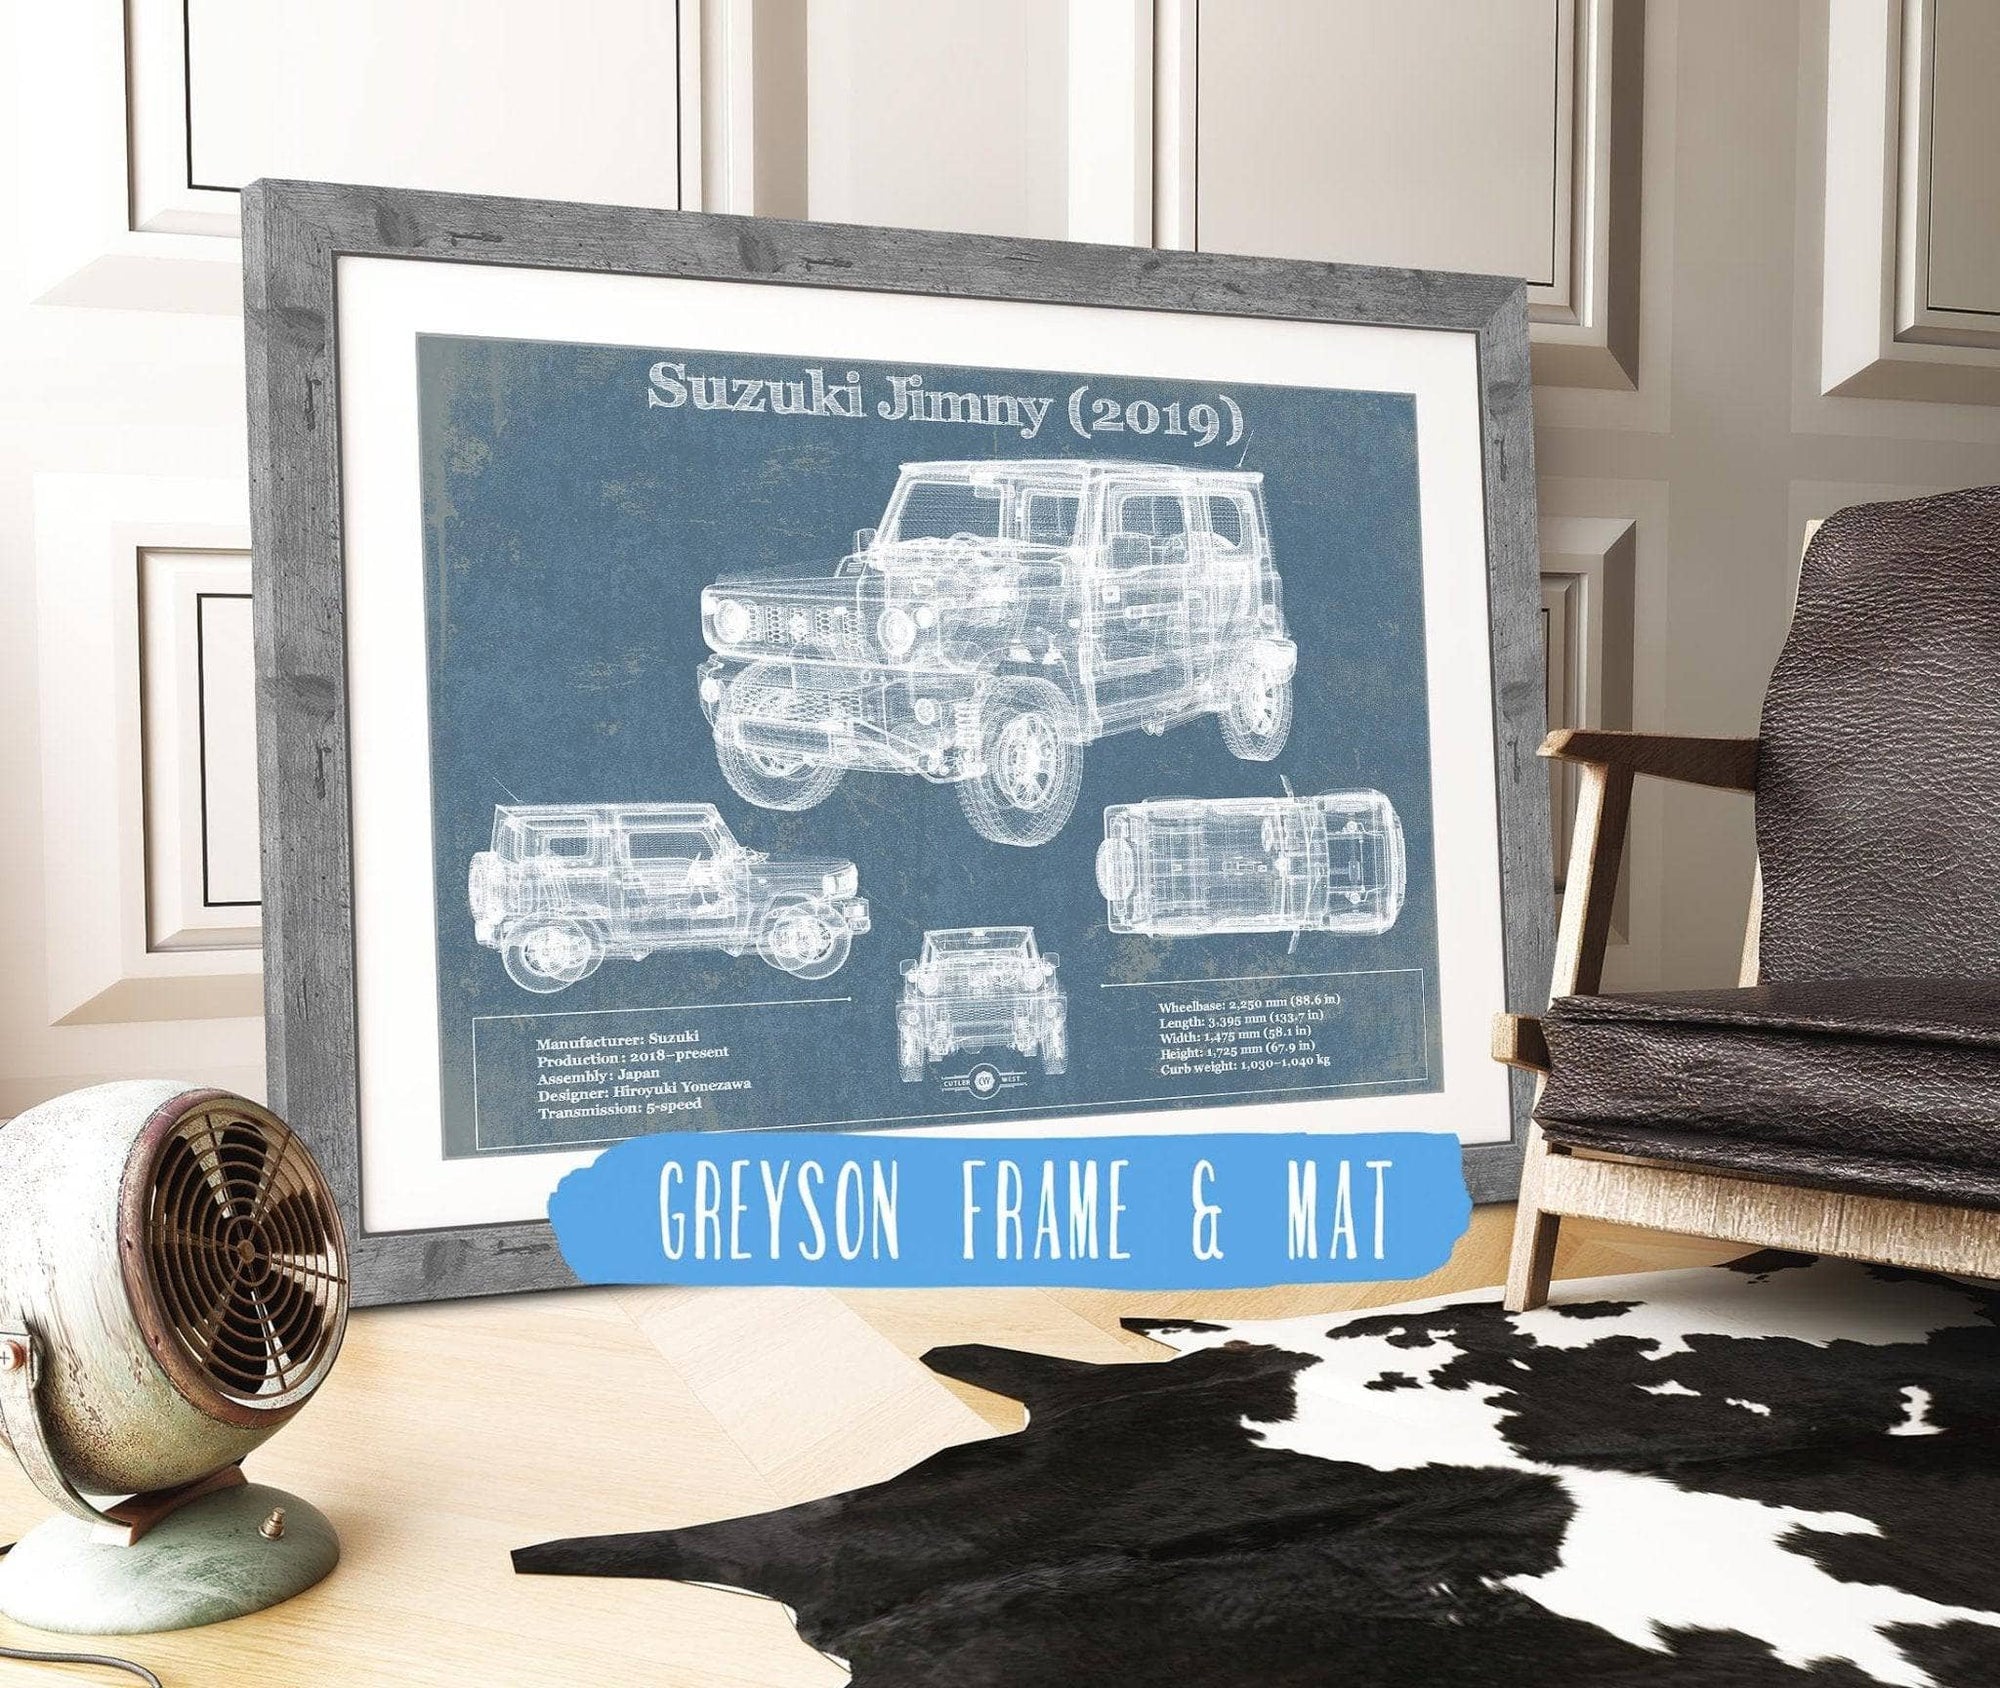 Cutler West Vehicle Collection 14" x 11" / Greyson Frame & Mat Suzuki Jimney 2019 Vintage Blueprint Auto Print 845000184_29012